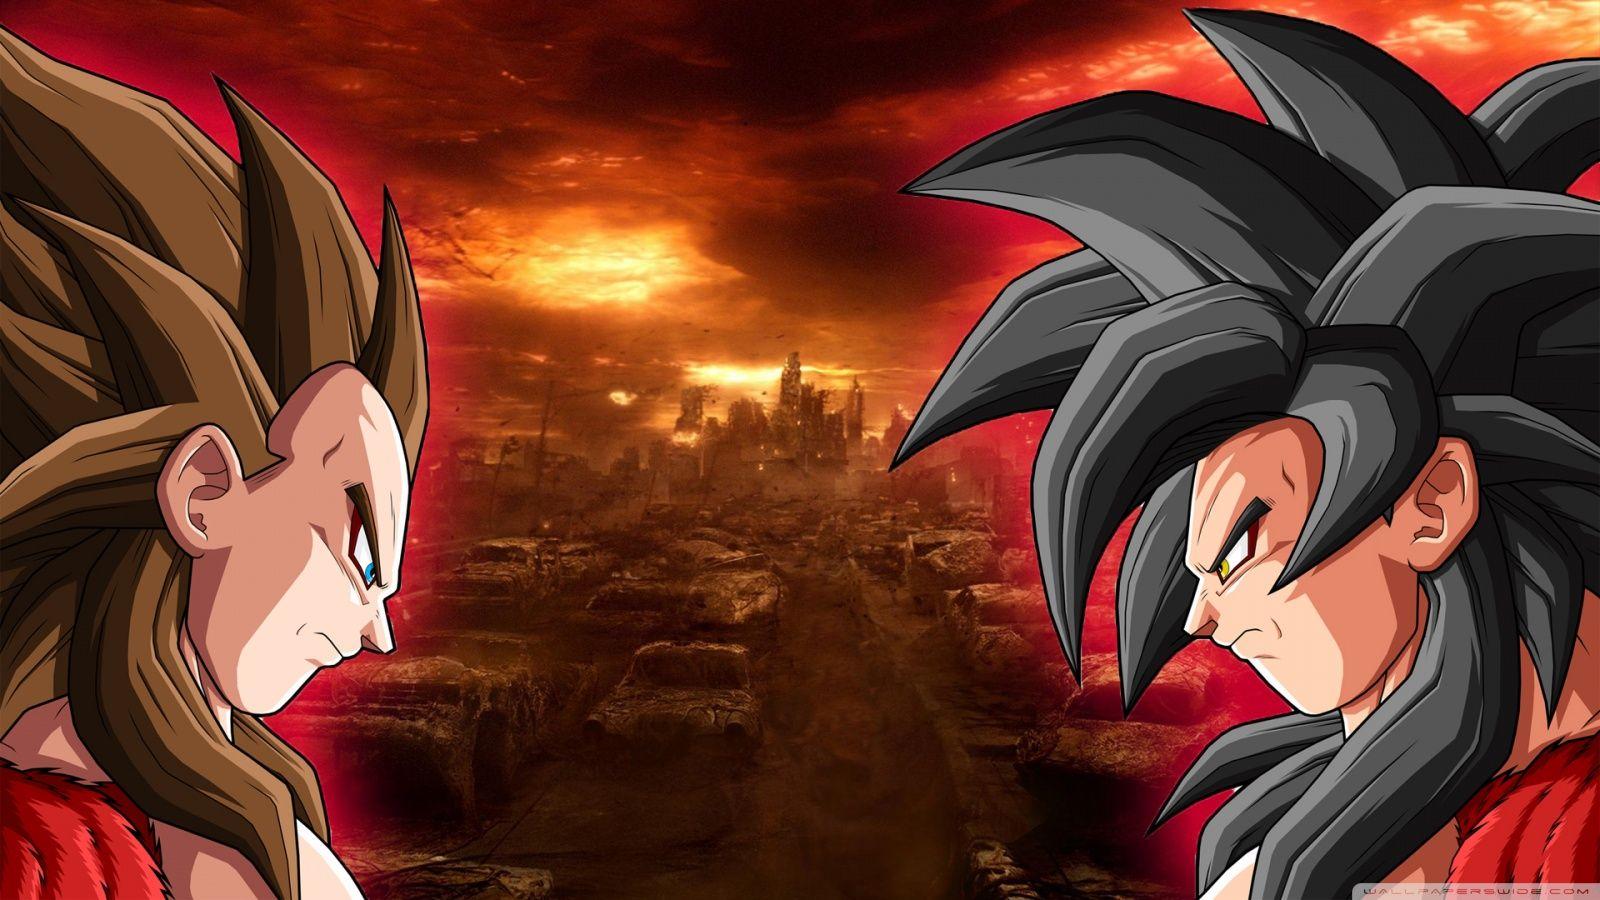 DBZ SS4 Goku vs Vegeta HD desktop wallpaper, Widescreen, High